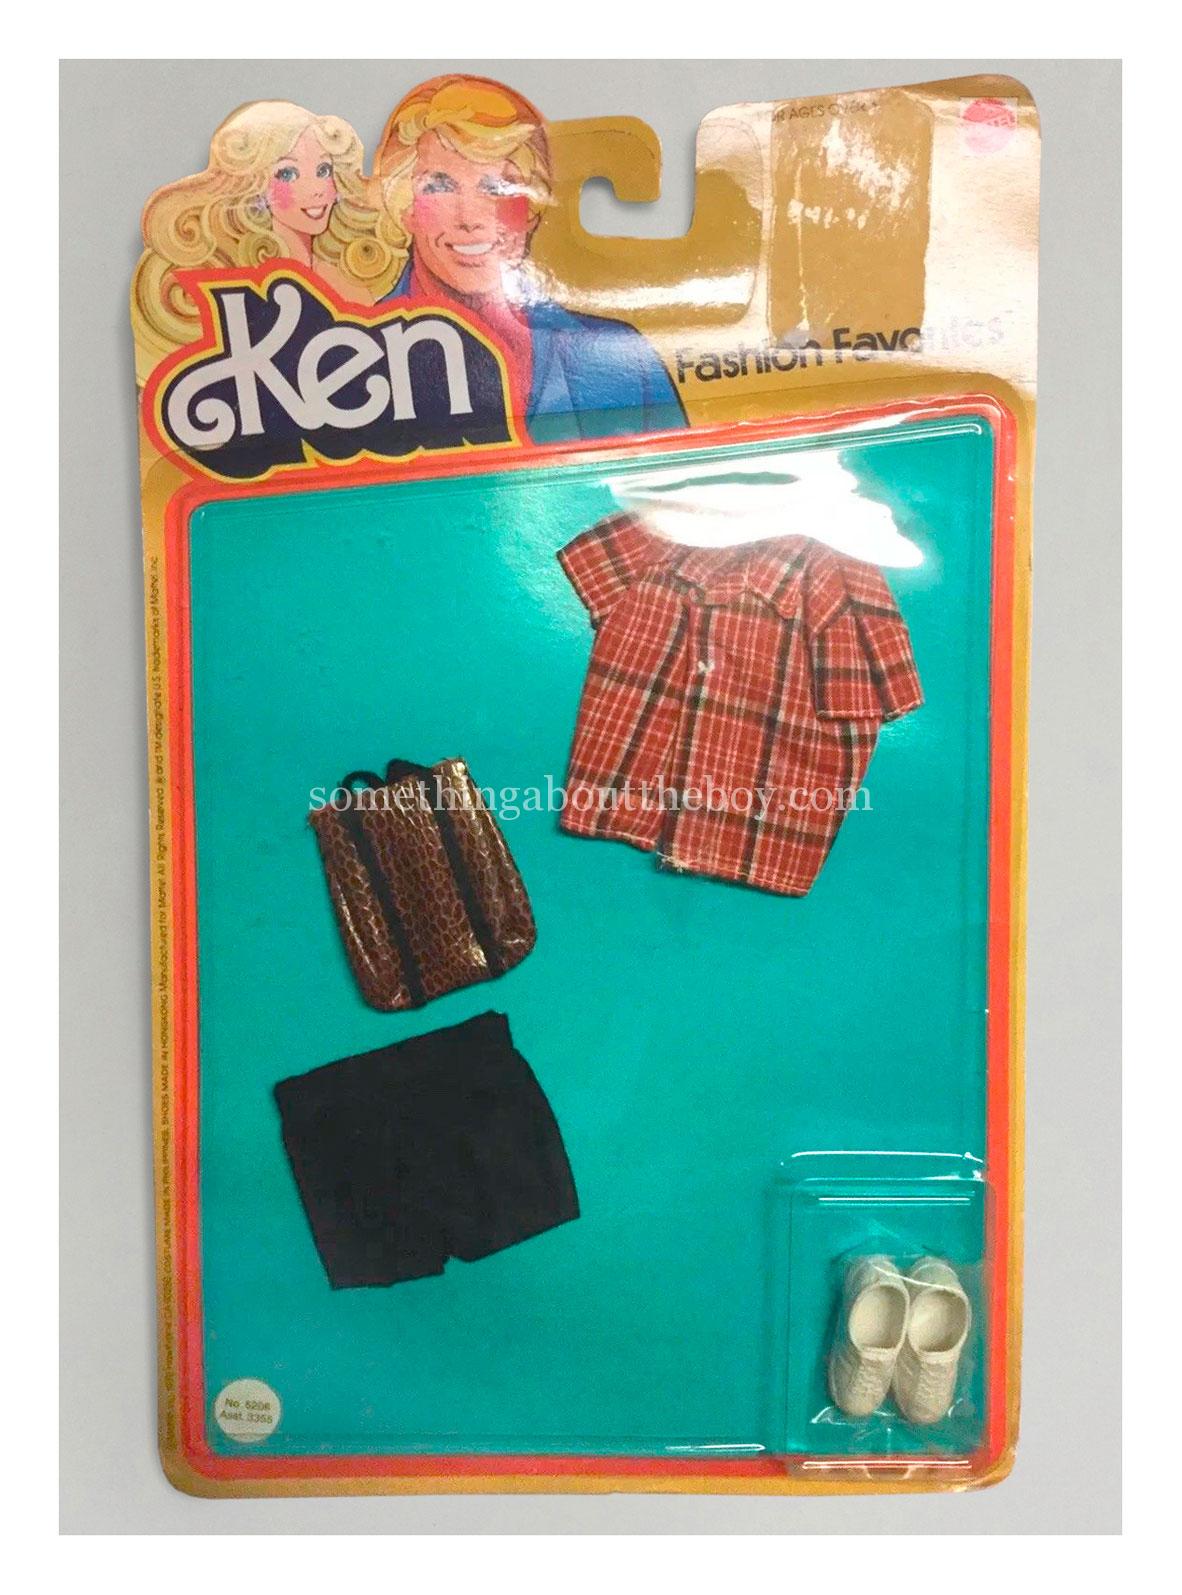 1981 Kmart Fashion Favorites #5208 in original packaging